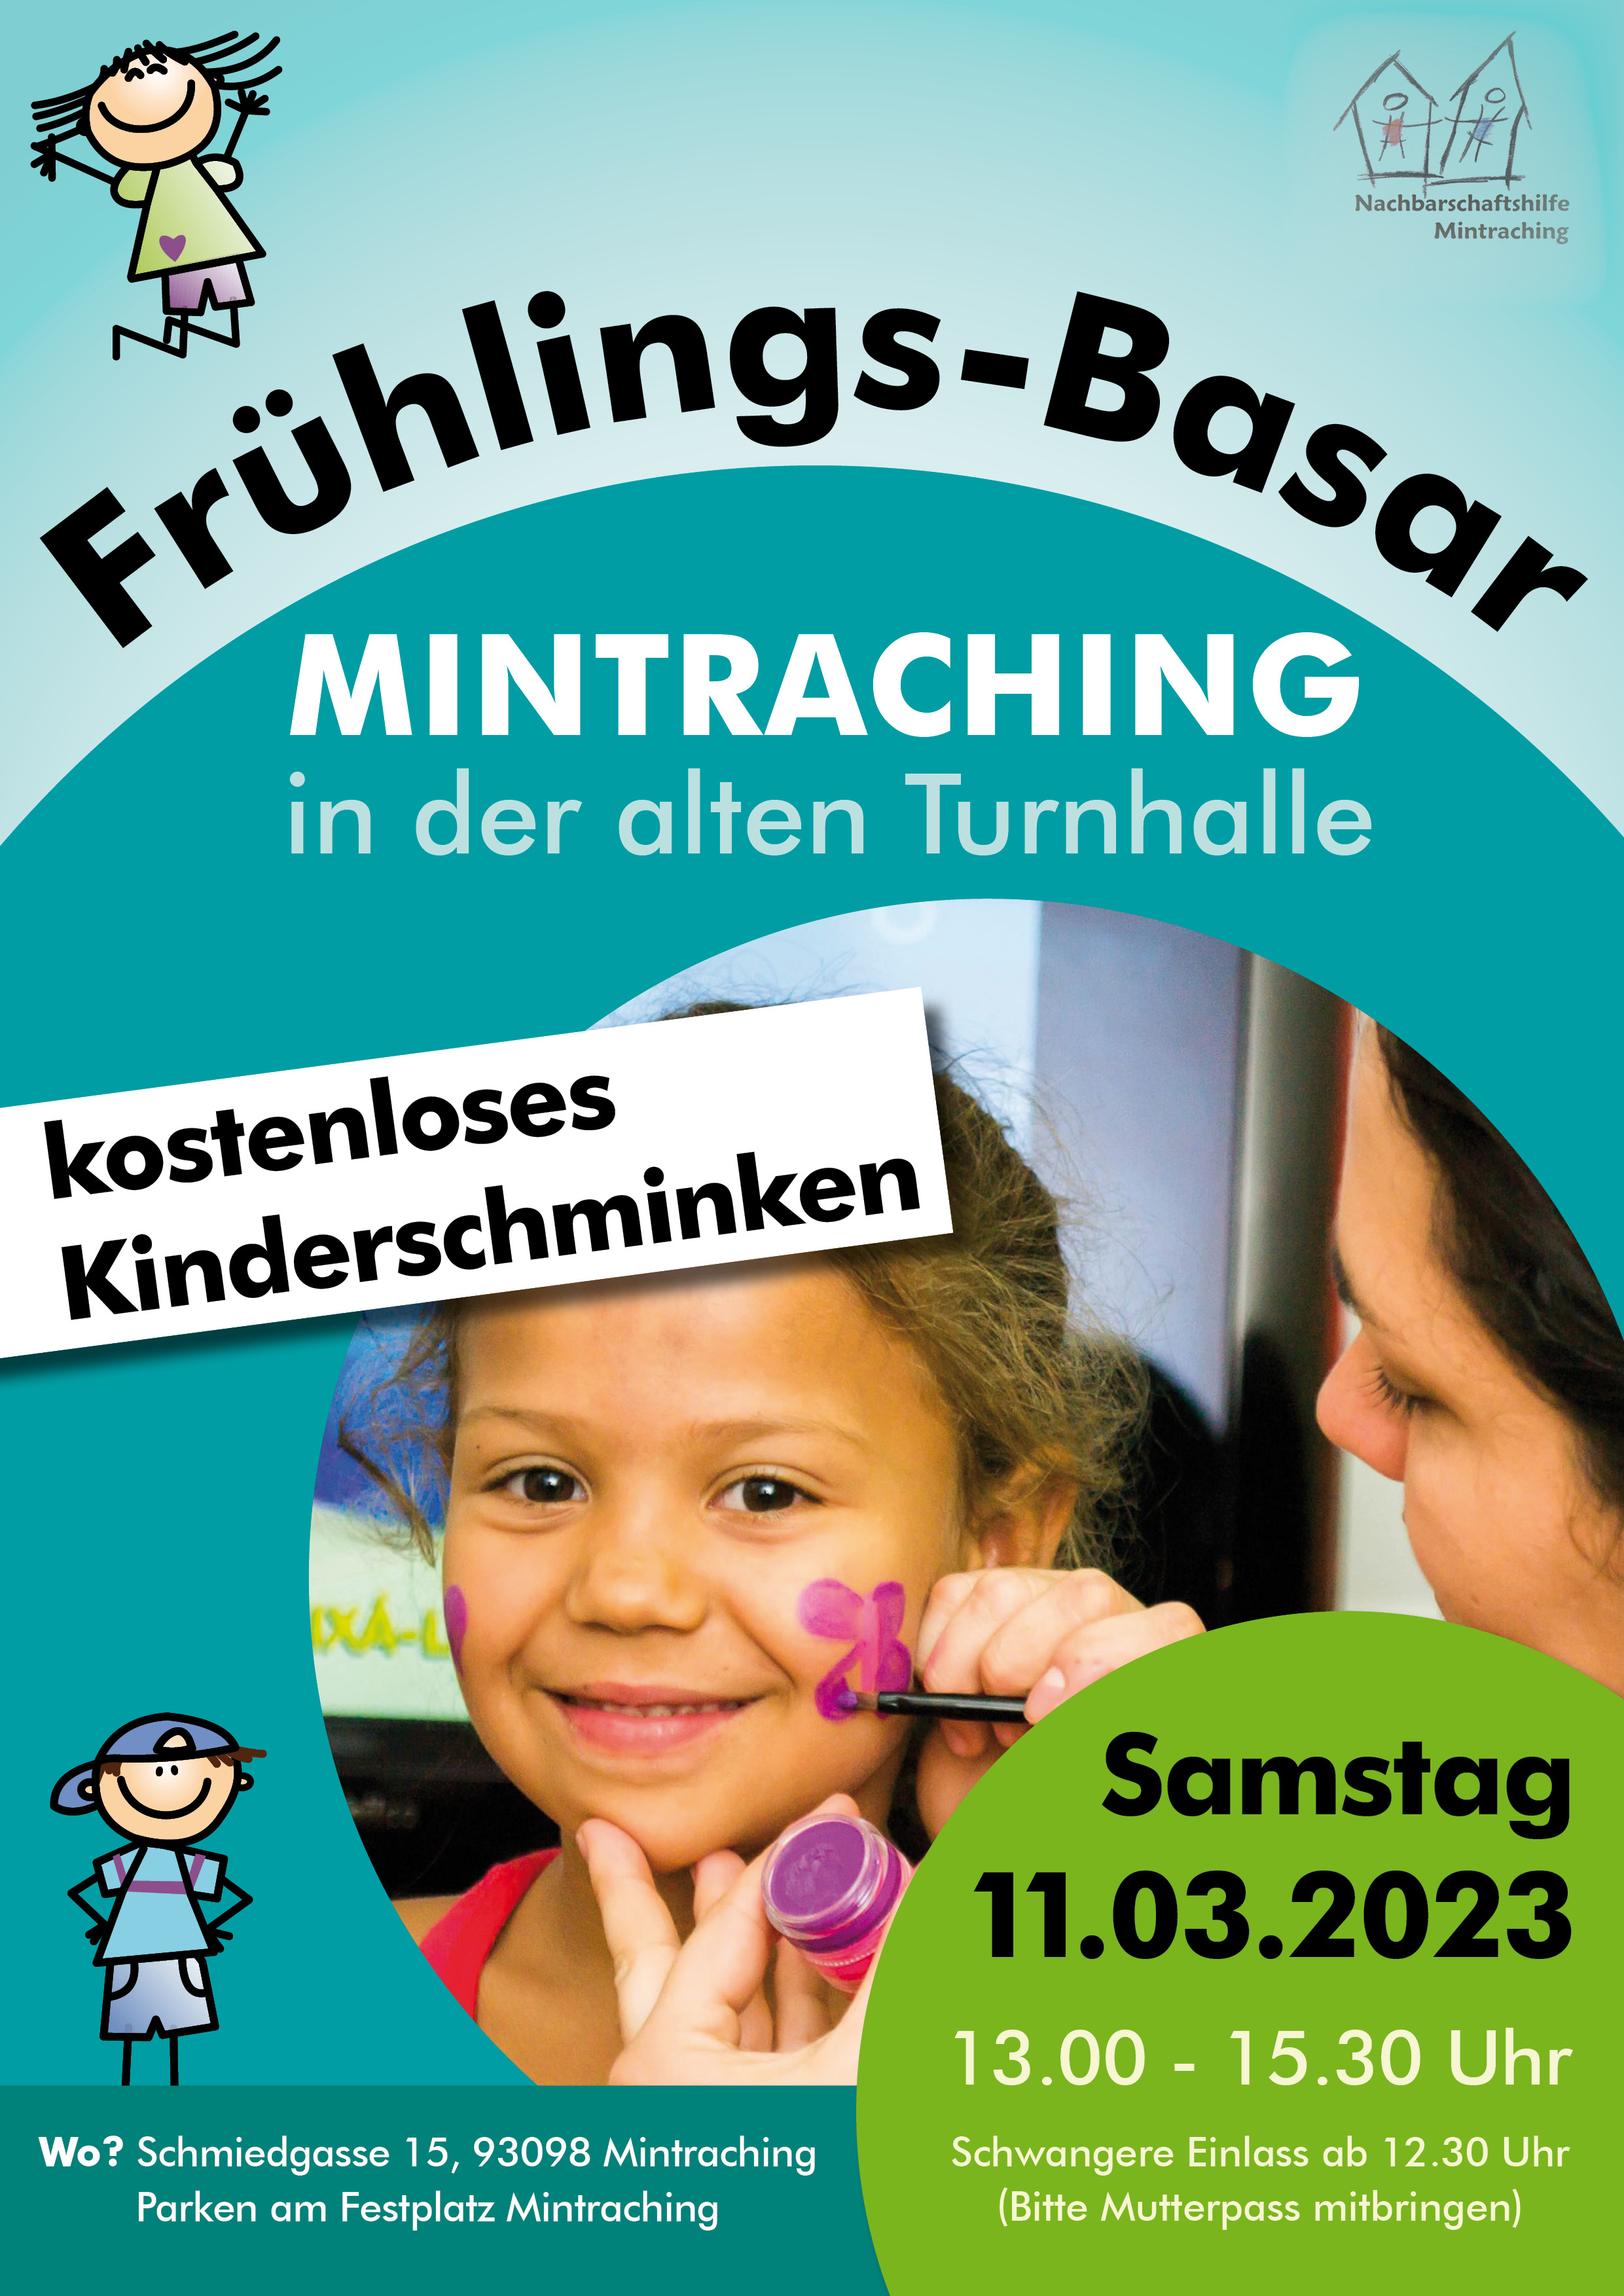 Kinderschminken beim Kinderbasar Mintraching 11.03.2023